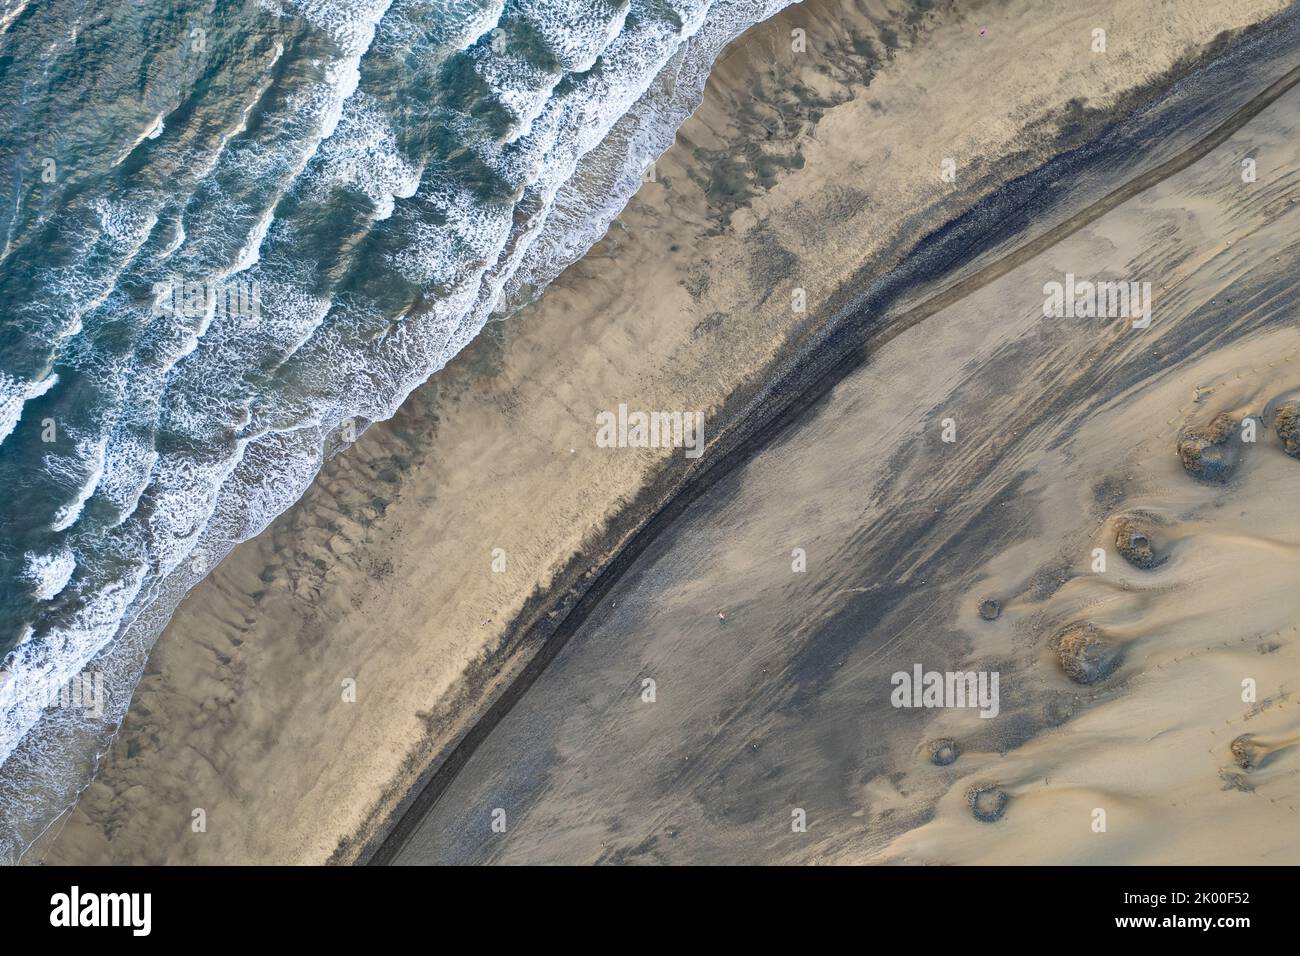 Dunes de Maspalomas, photographie de drone Banque D'Images